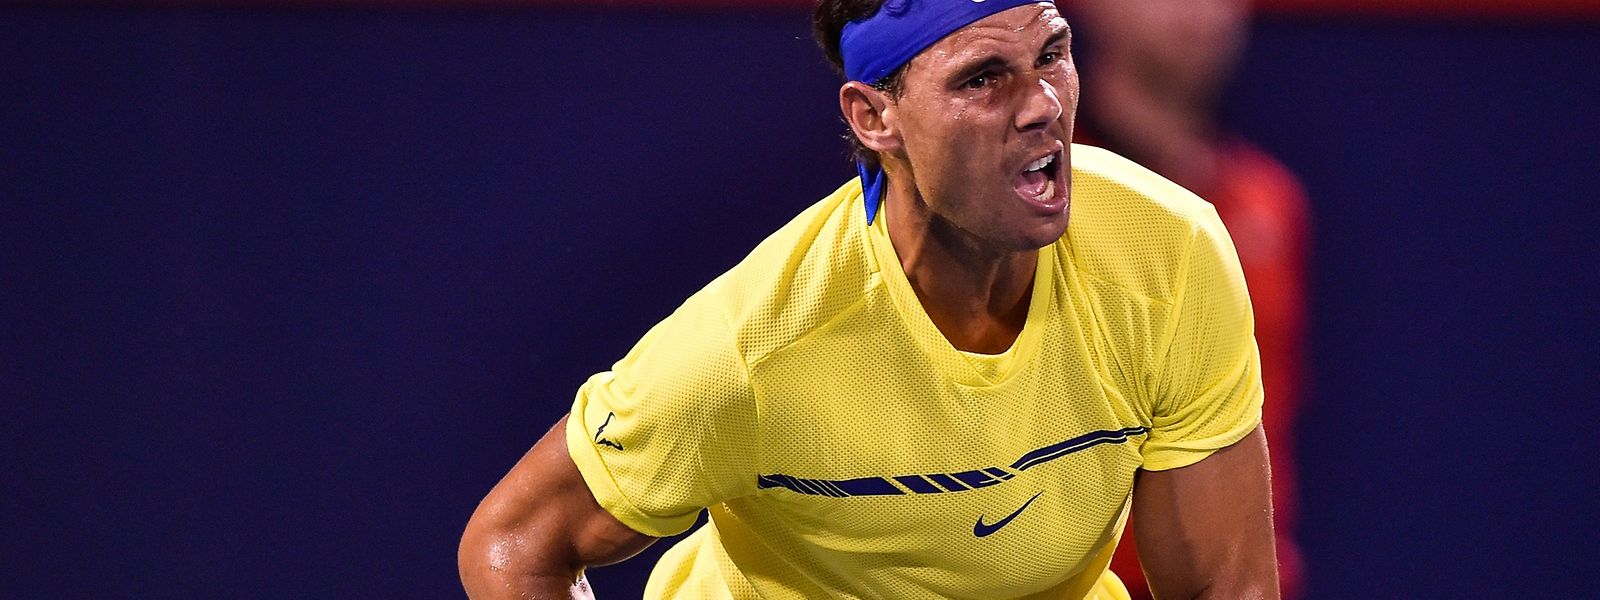 Seit Juli 2014 stand Rafael Nadal nicht mehr auf Rang eins der Weltrangliste.